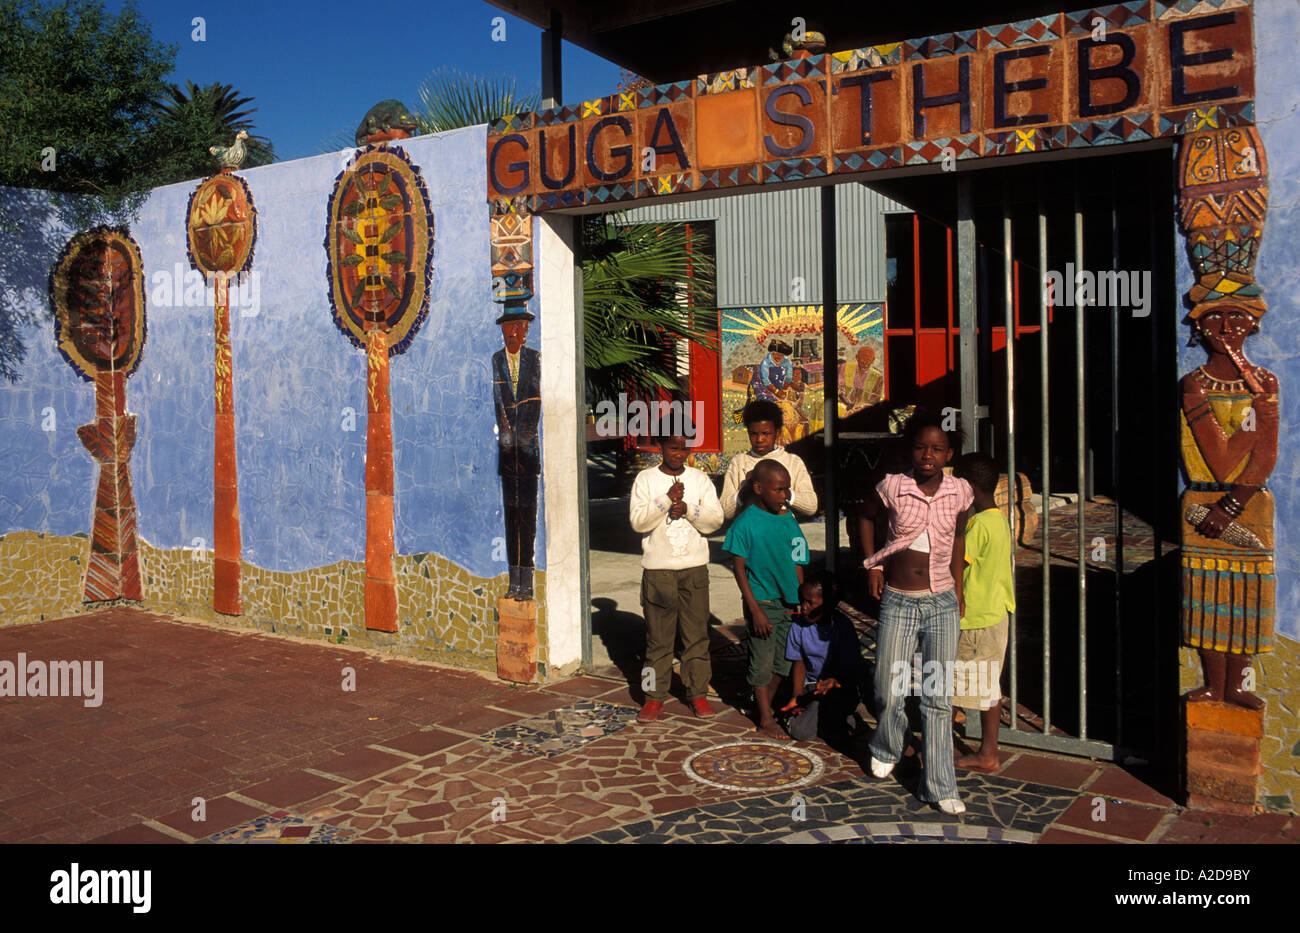 Guga S Thebe Kunst Kulturzentrum Langa Cape Flats Kapstadt Südafrika Stockfoto